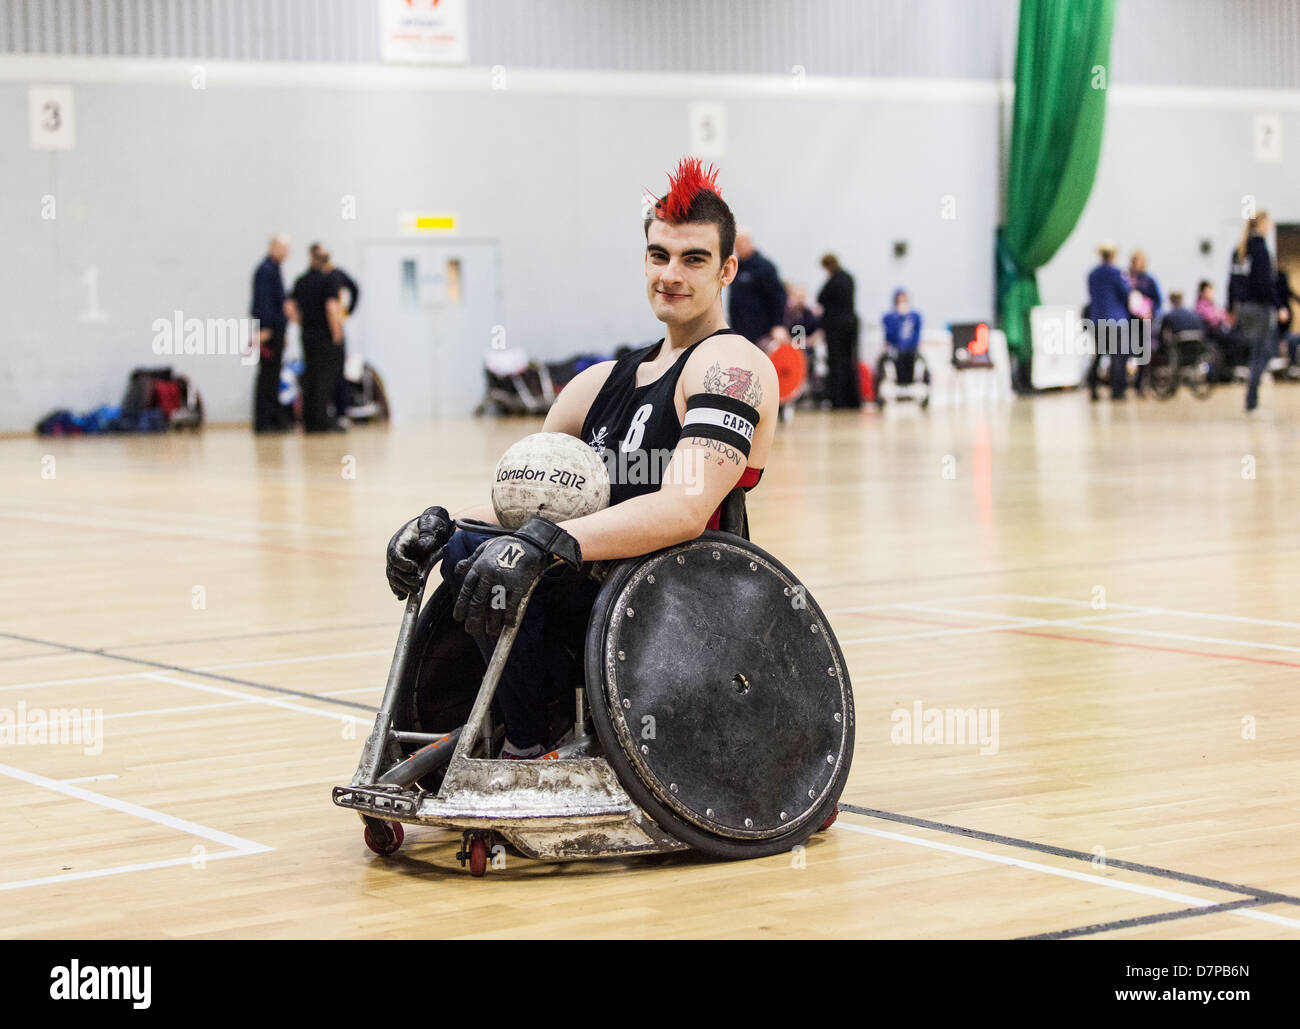 David Anthony GBWR, joueur de rugby en fauteuil roulant aux Jeux paralympiques, l'équipe Go, Londres 2012 Banque D'Images